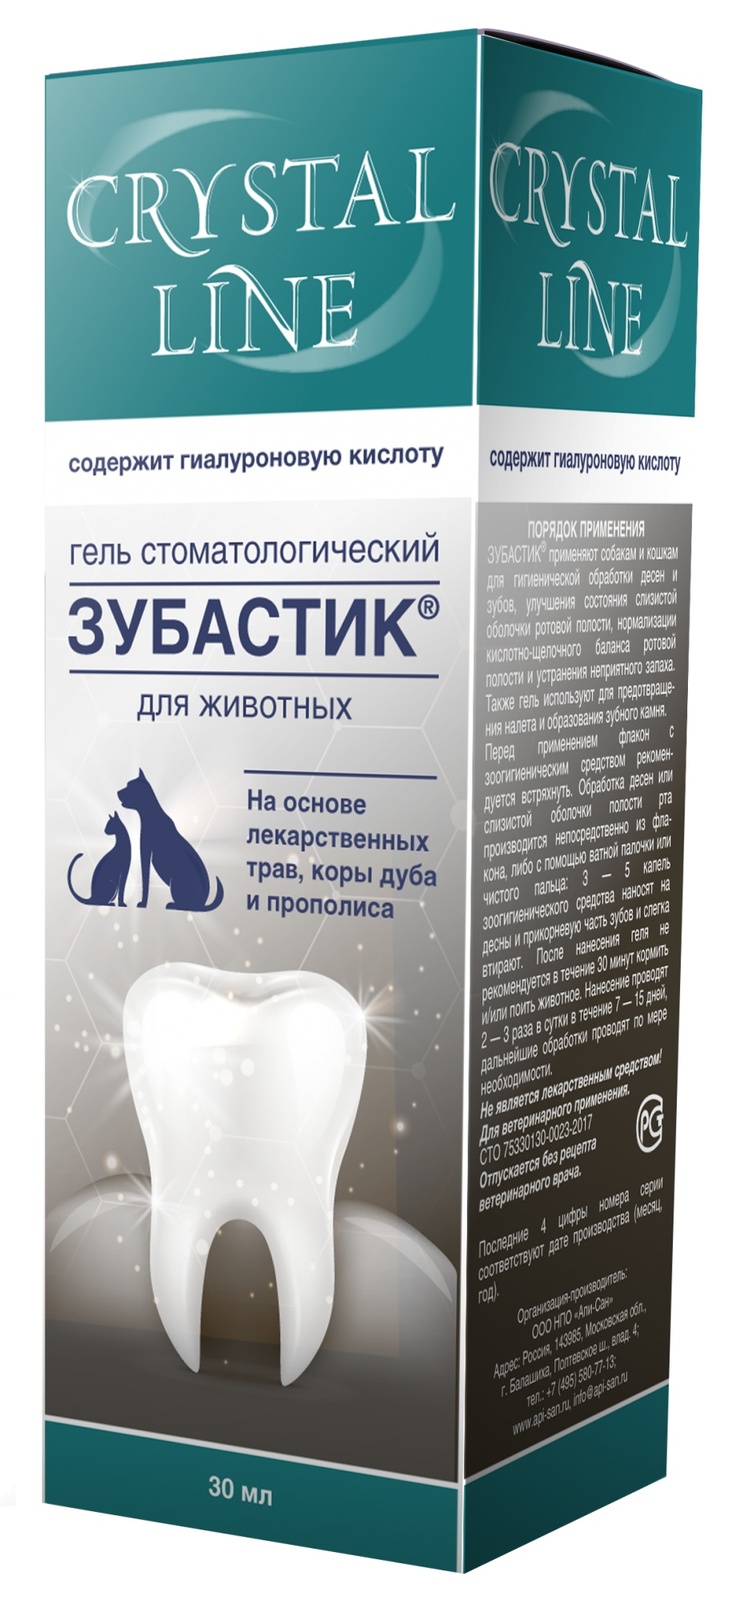 Apicenna Apicenna зубастик гель для чистки зубов Crystal line (30 г) зубастик спрей зоогигиенический стоматологический для животных 30мл